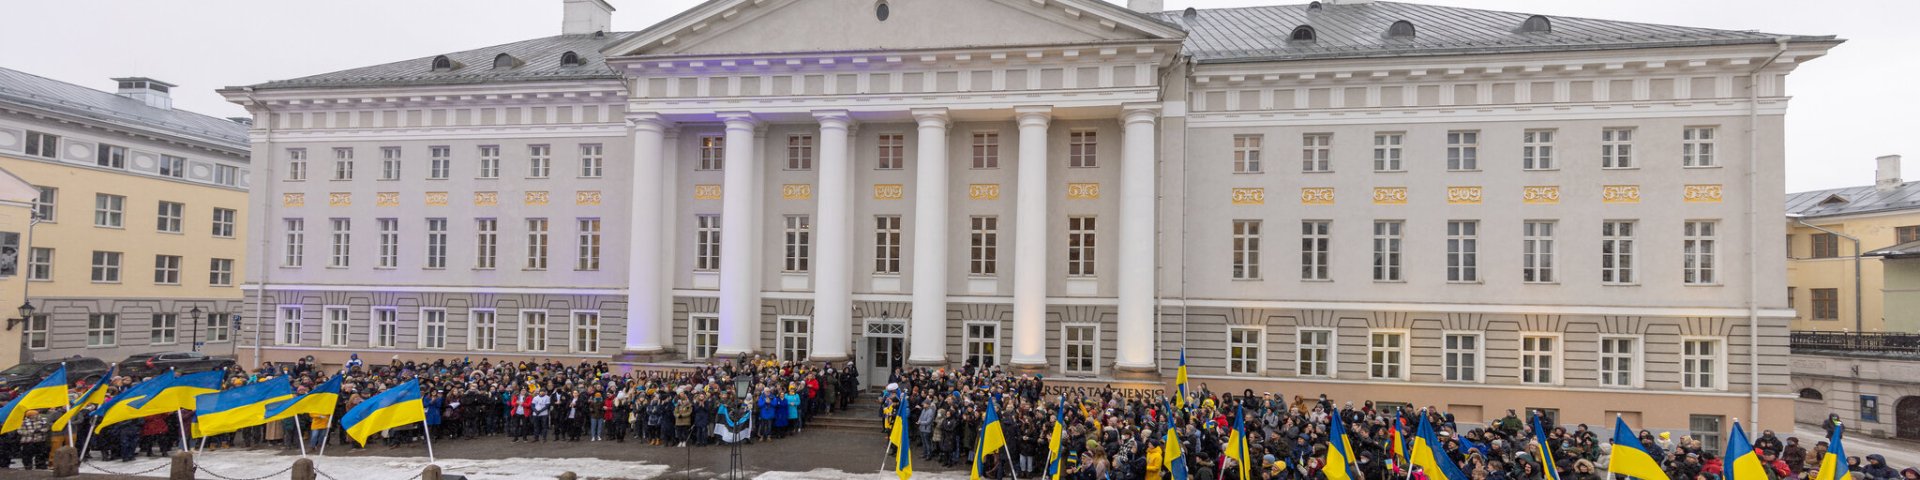 Ülikoolipere kogunes peahoone ette, et kuulata senati pöördumist Ukraina rahva poole